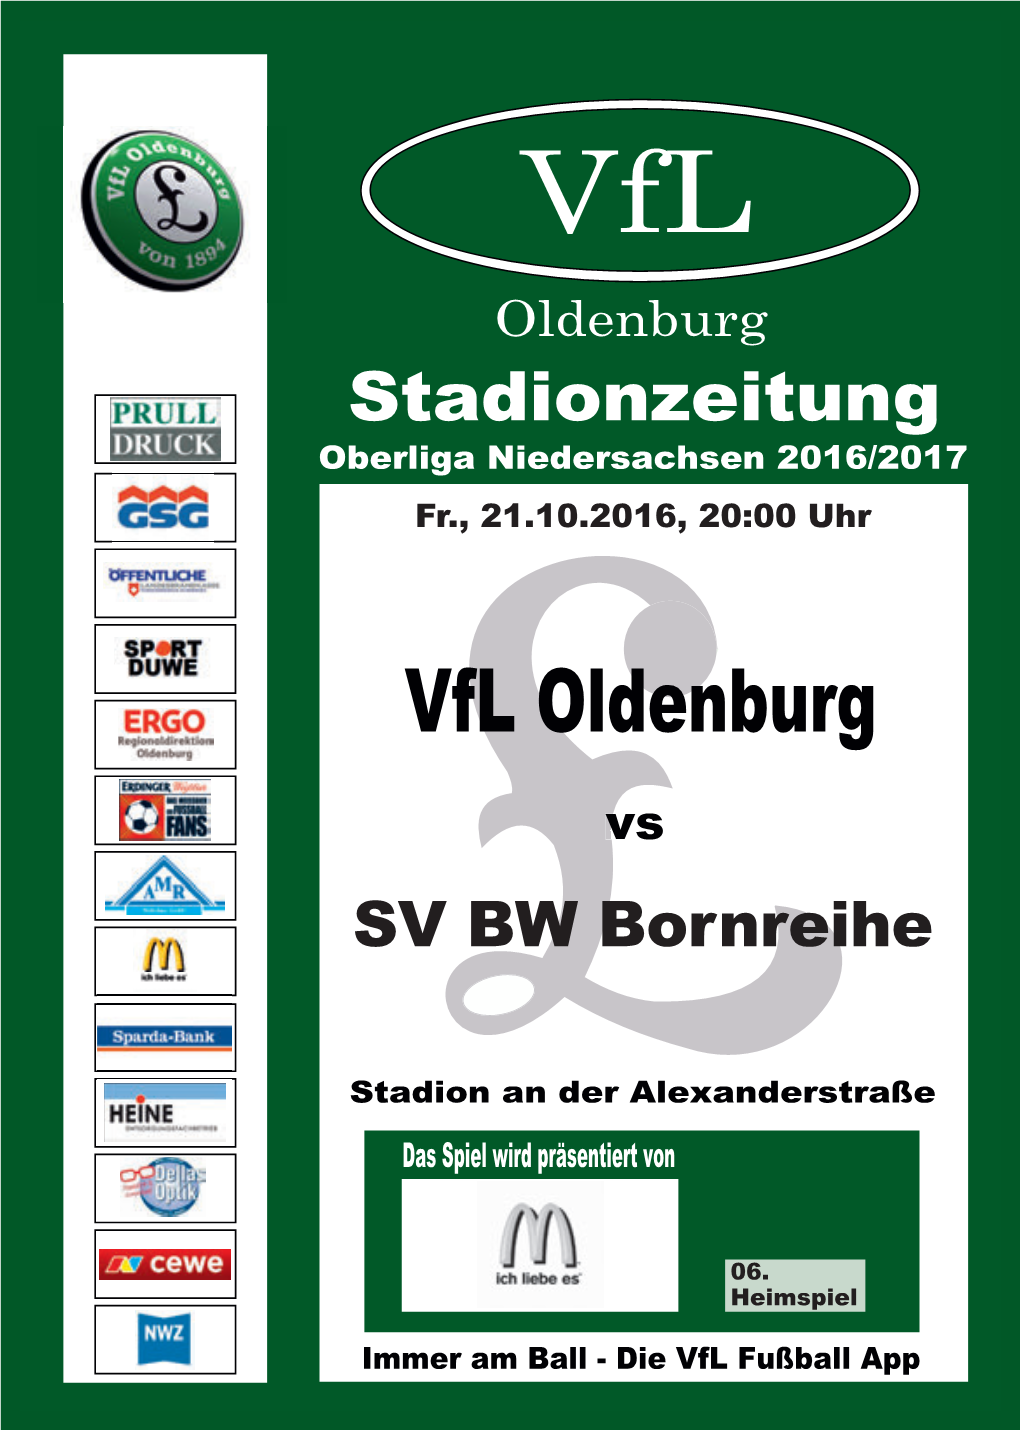 Vfl Oldenburg Vs. SV BW Bornreihe Aufsteiger Zu Gast Im Stadion an Der Alexanderstraße